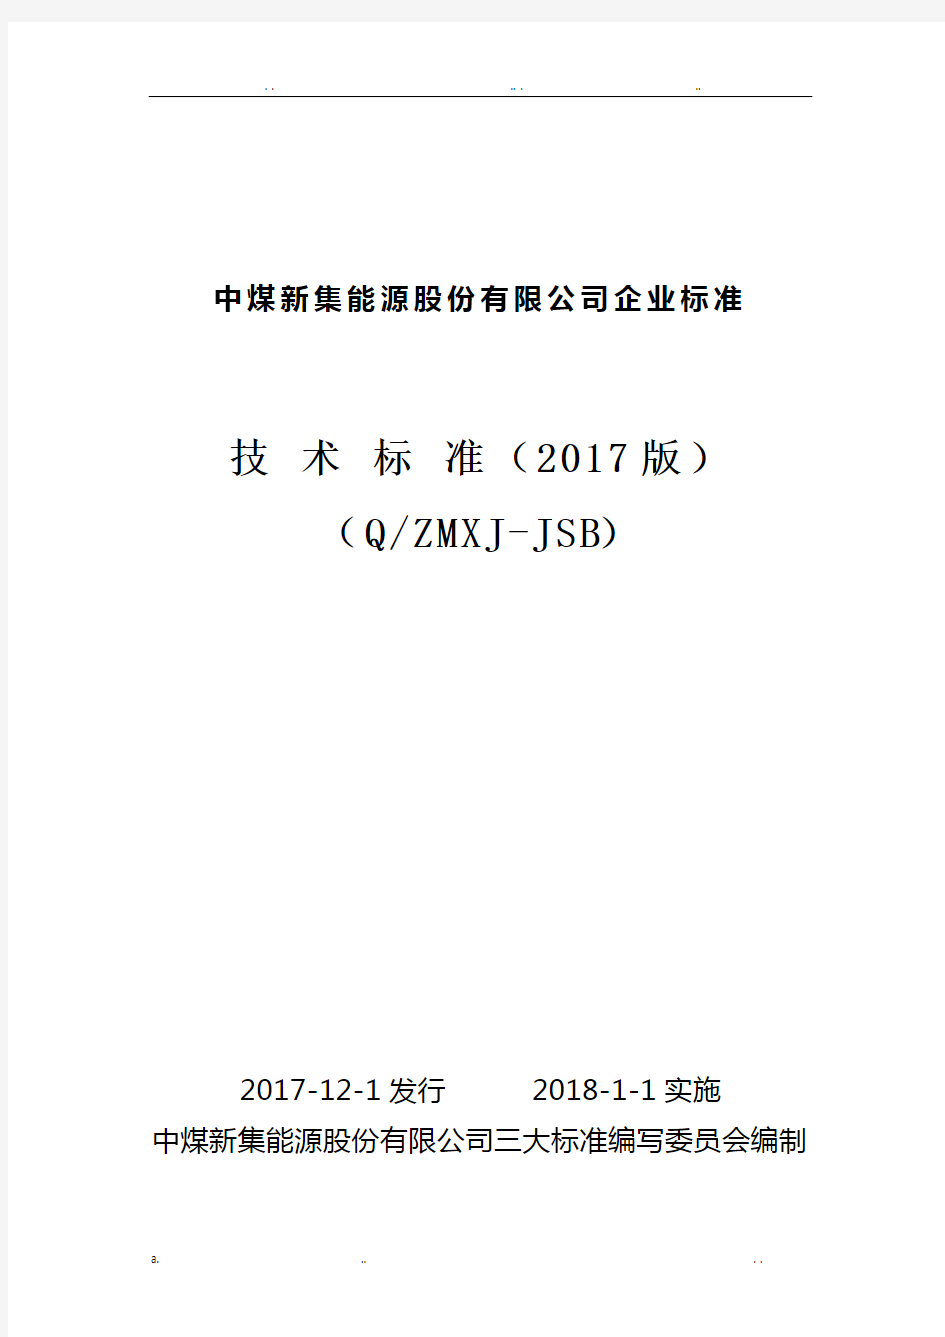 煤矿机电技术标准2017(三大标准)